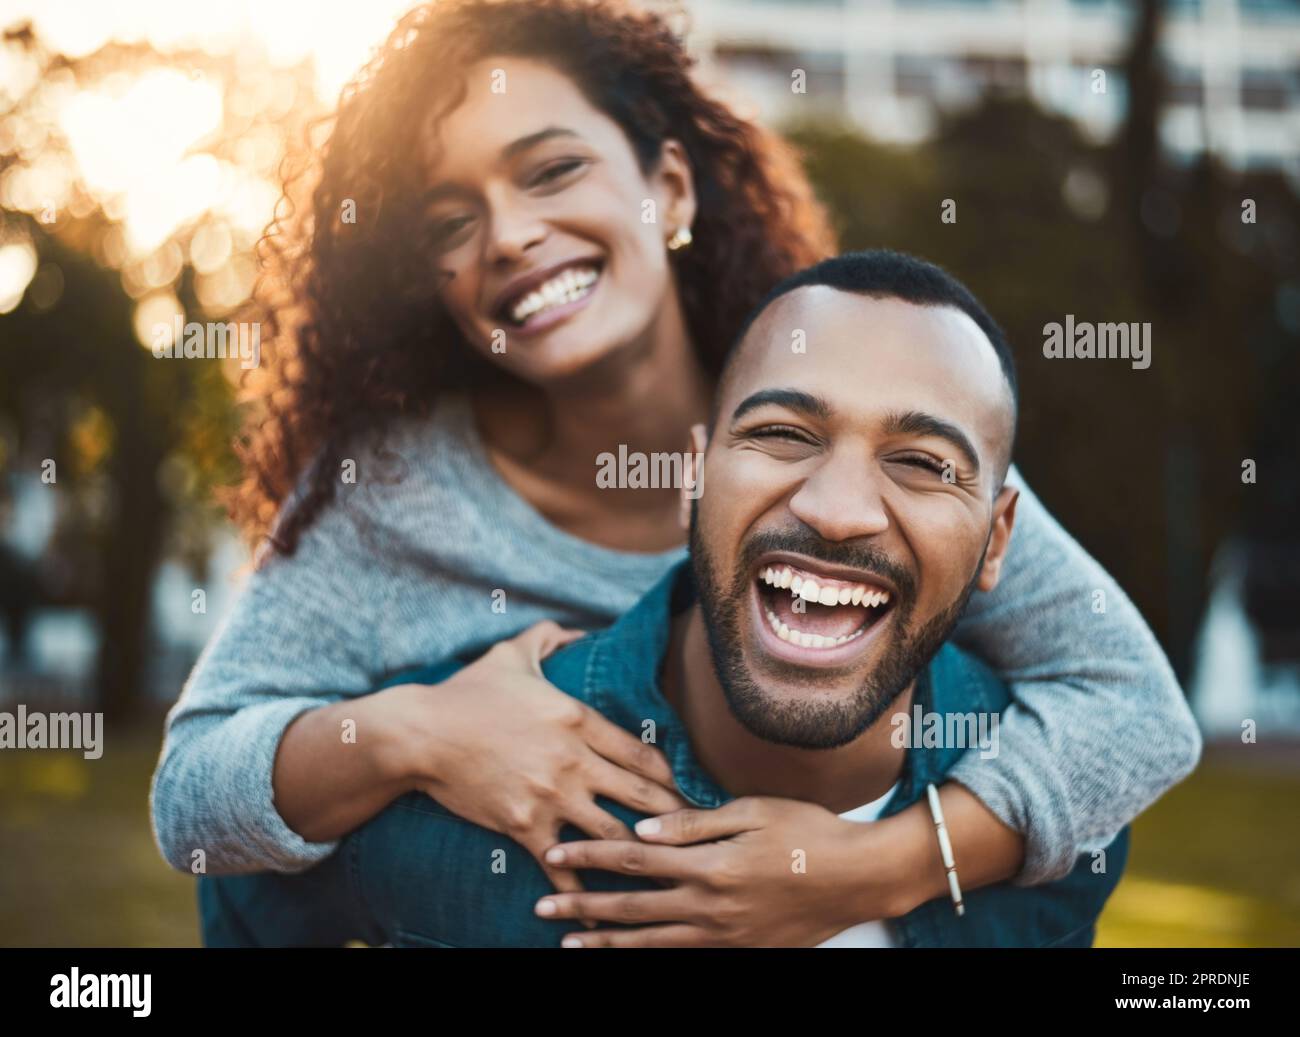 Frische Luft tut wirklich Wunder für Glück. Porträt eines jungen Paares, das gemeinsam im Freien Spaß hat. Stockfoto